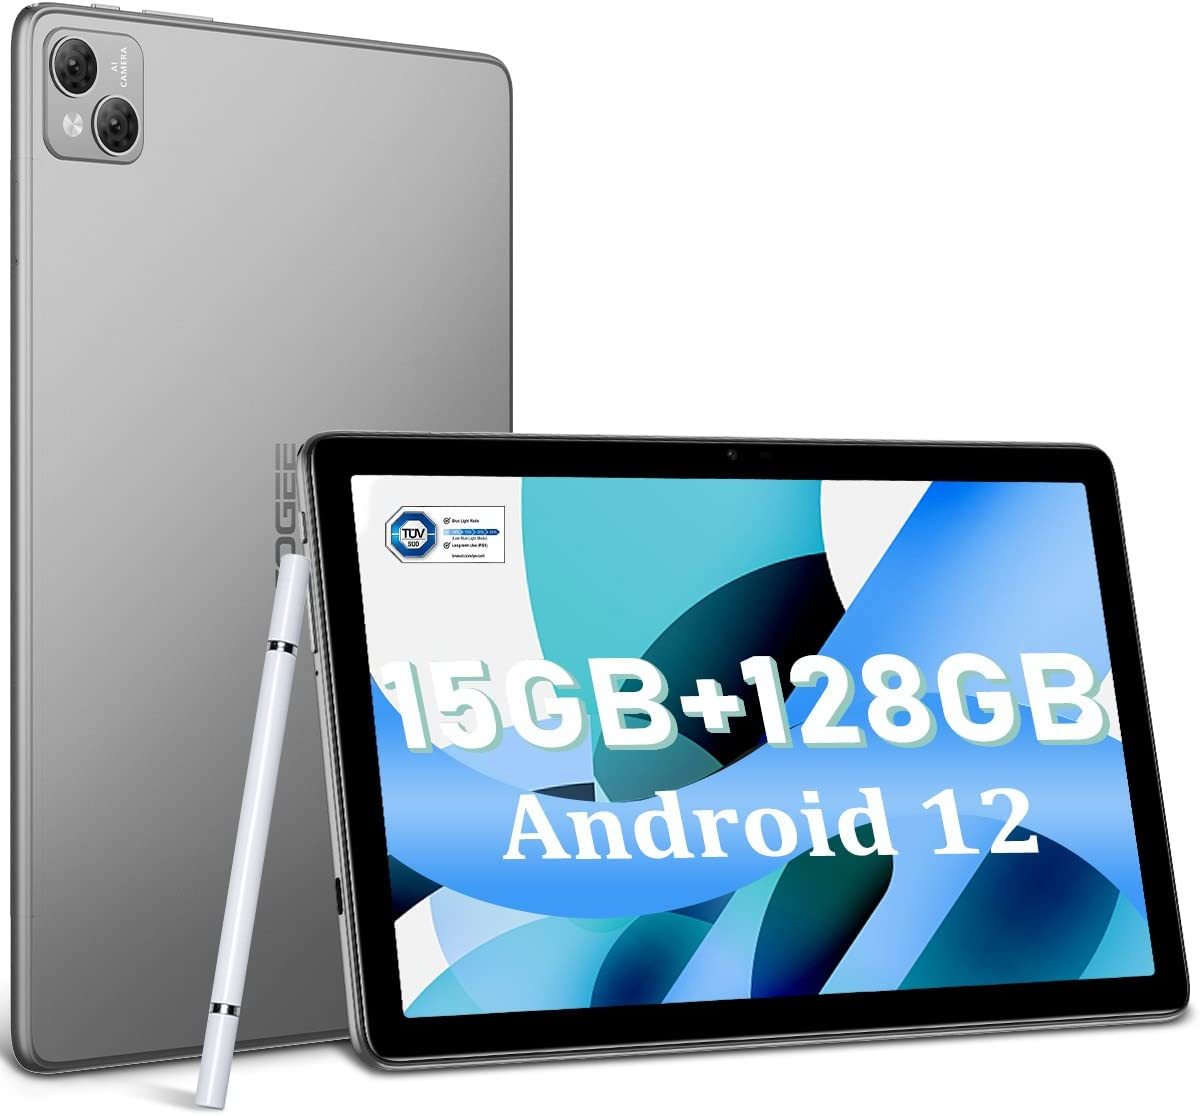 日本最級 タブレット Android12 15GB タブレット10.1インチ T10